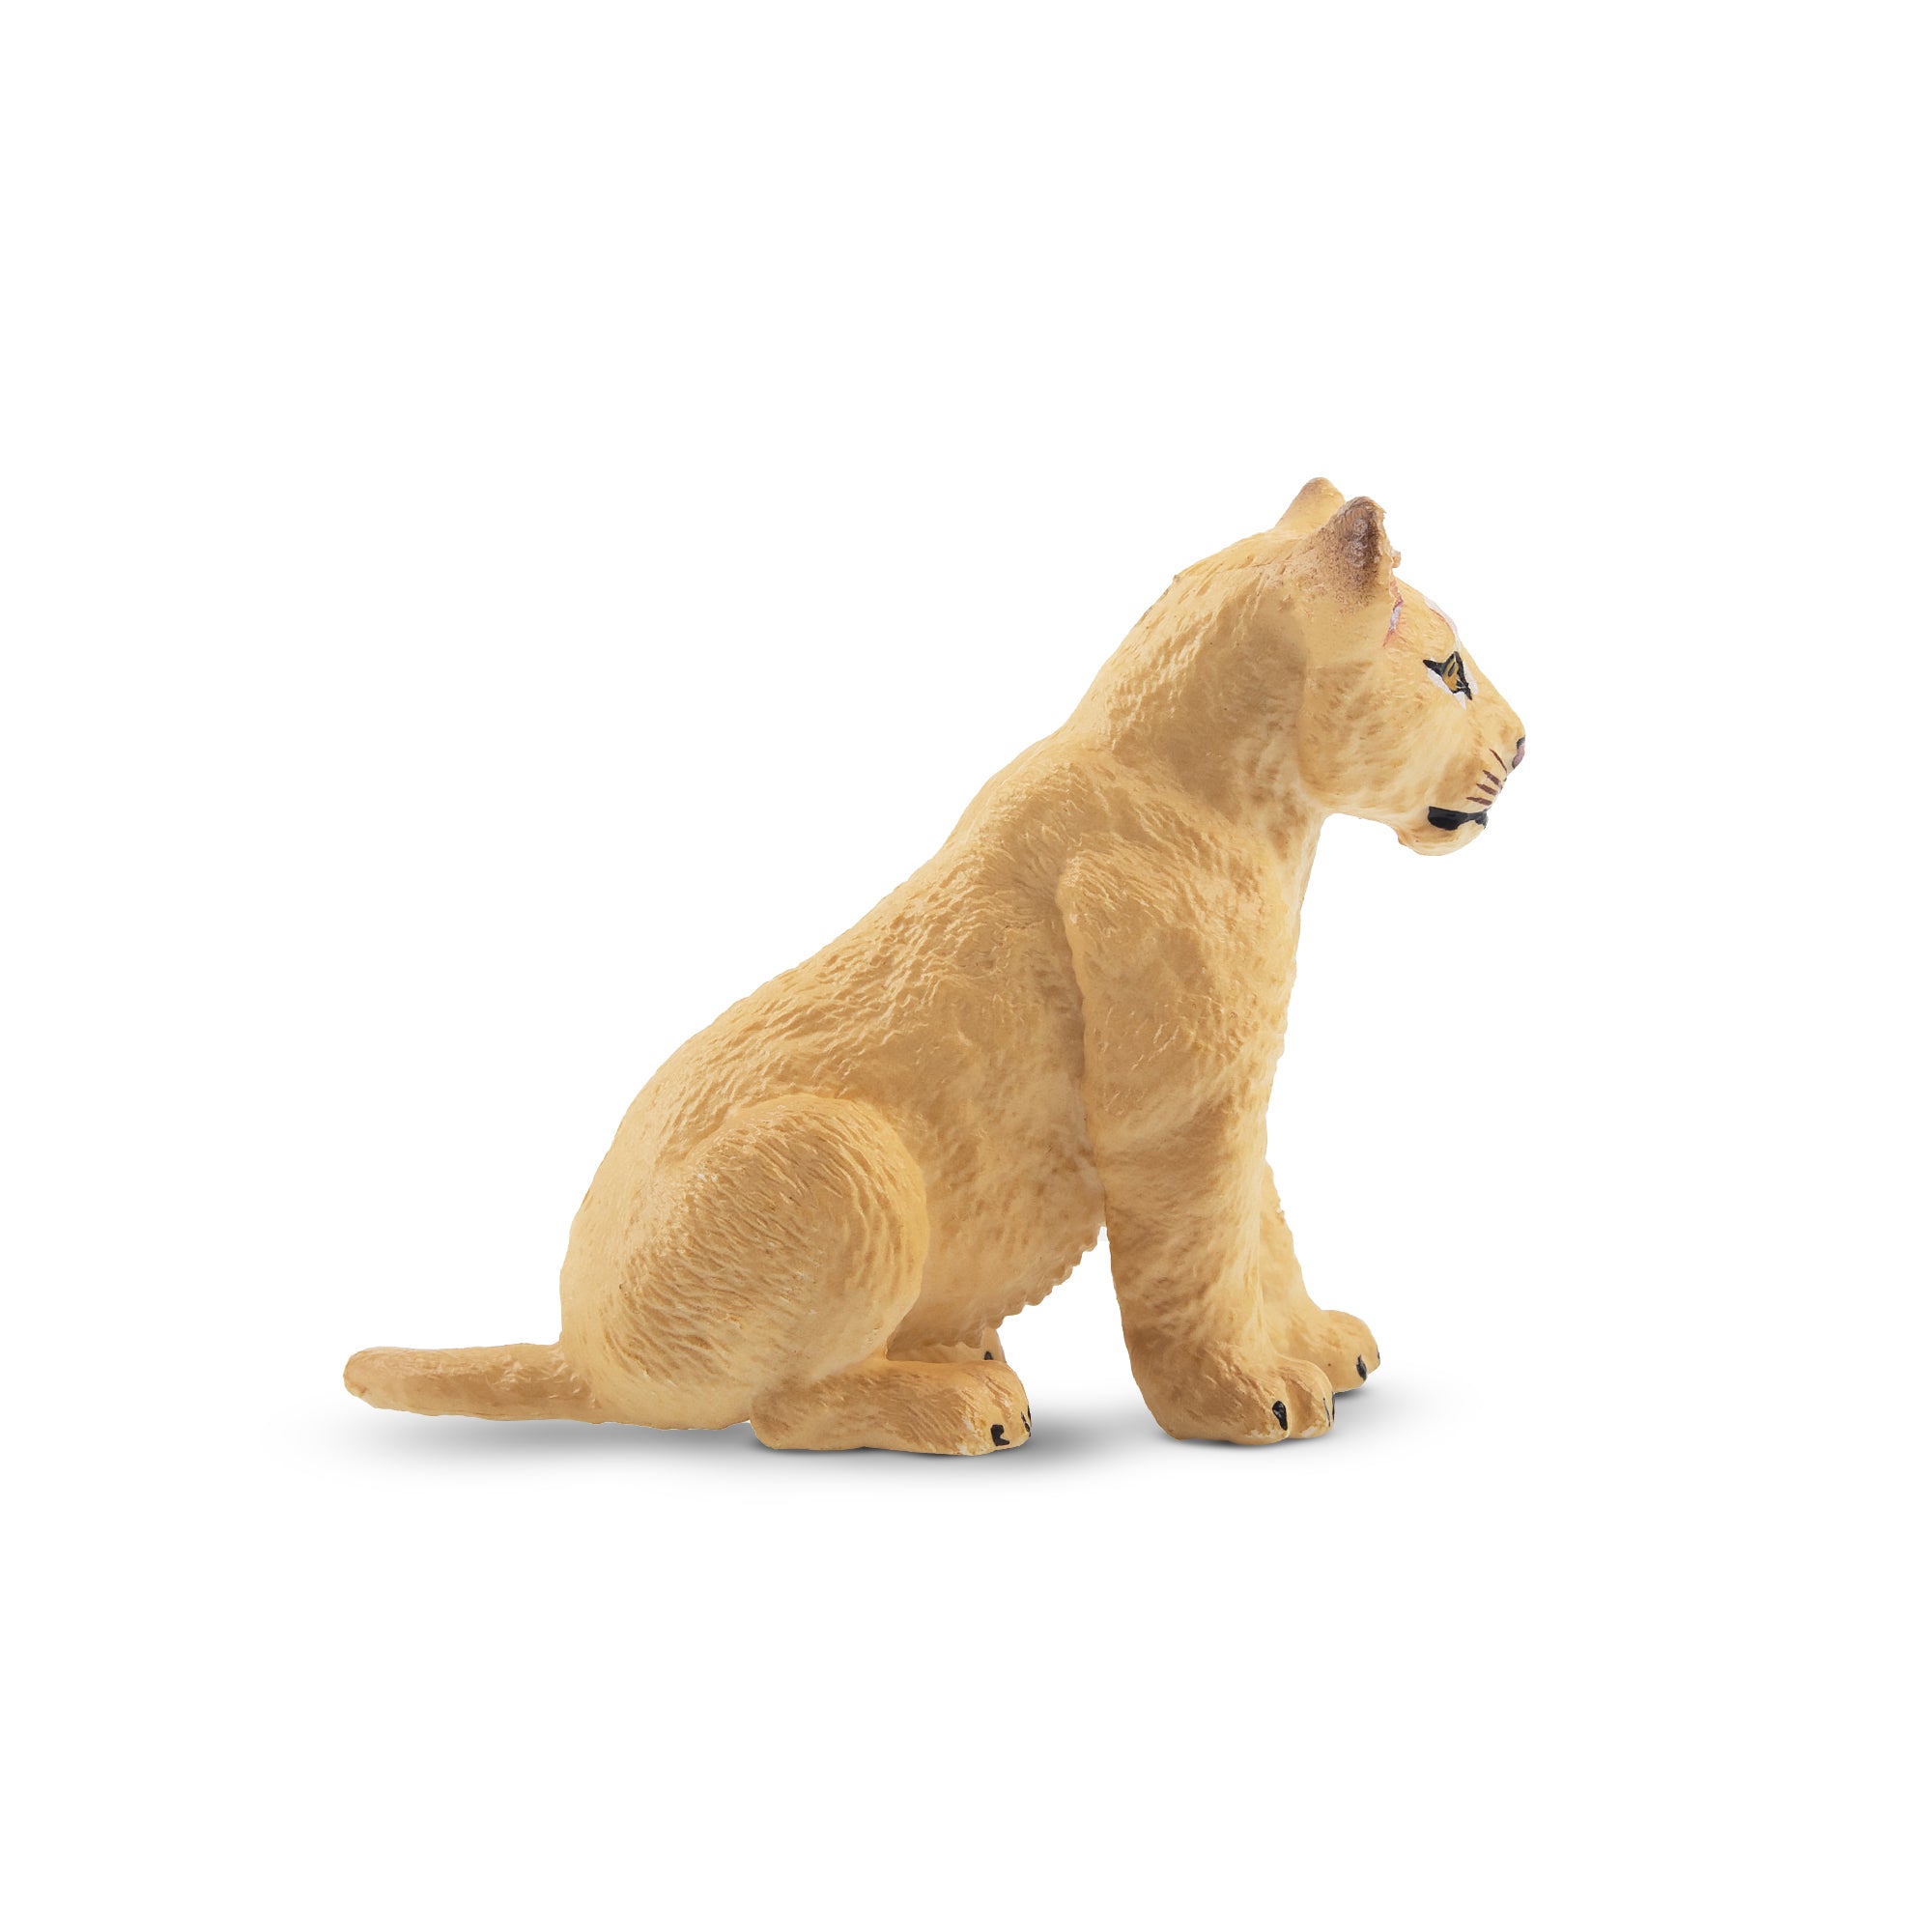 Toymany Lion Cub Figurine Toy